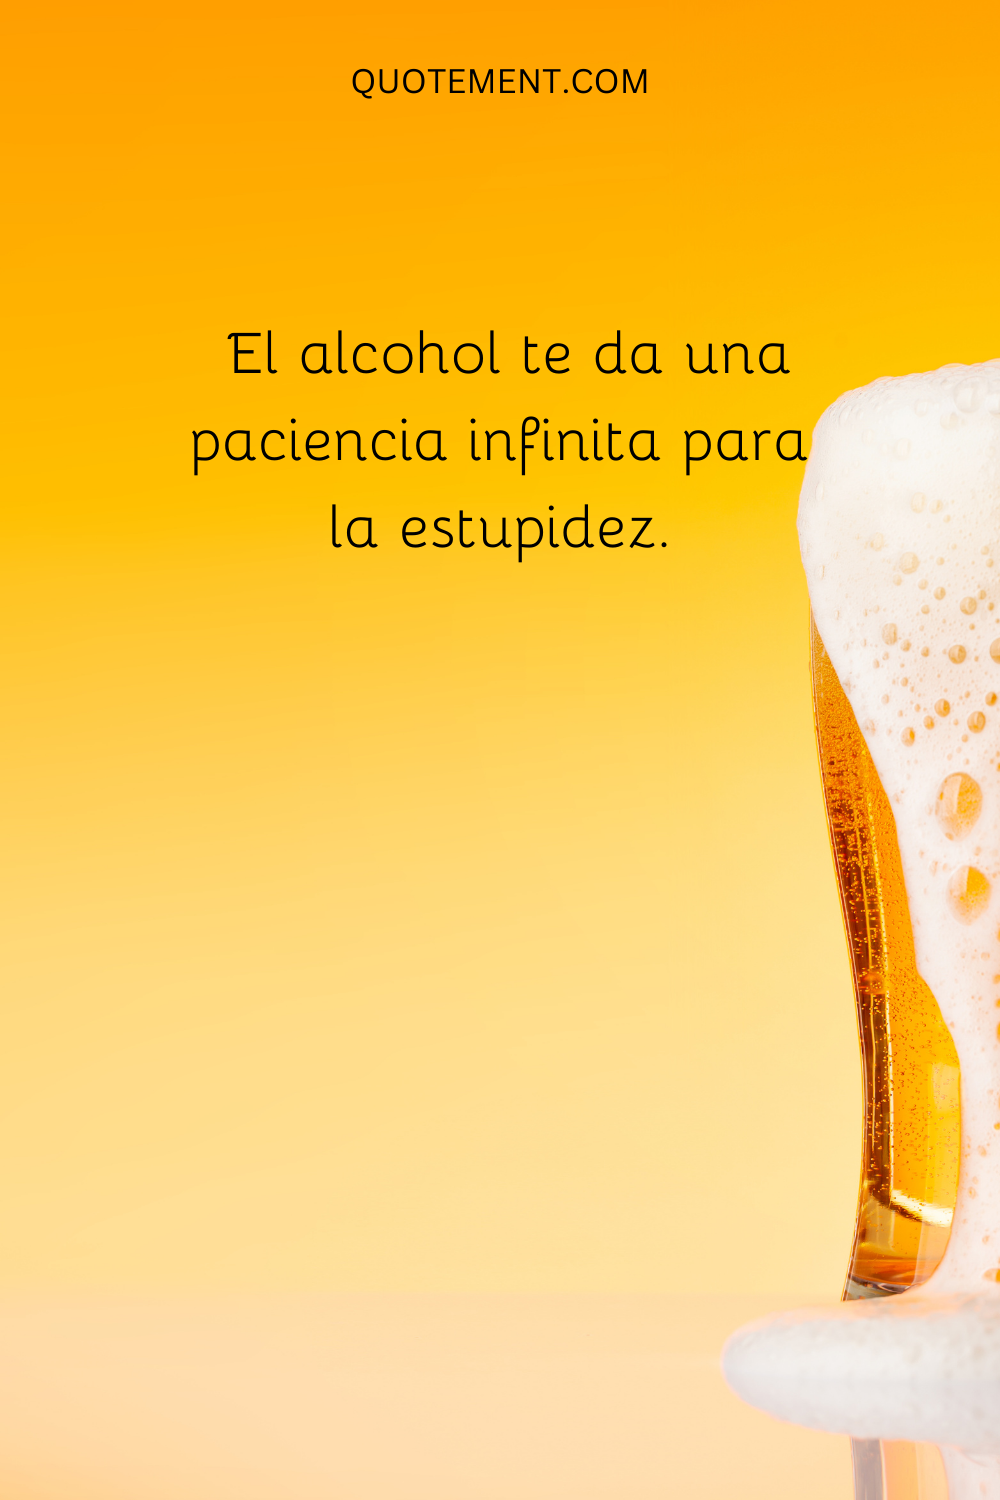 El alcohol te da una paciencia infinita para la estupidez.